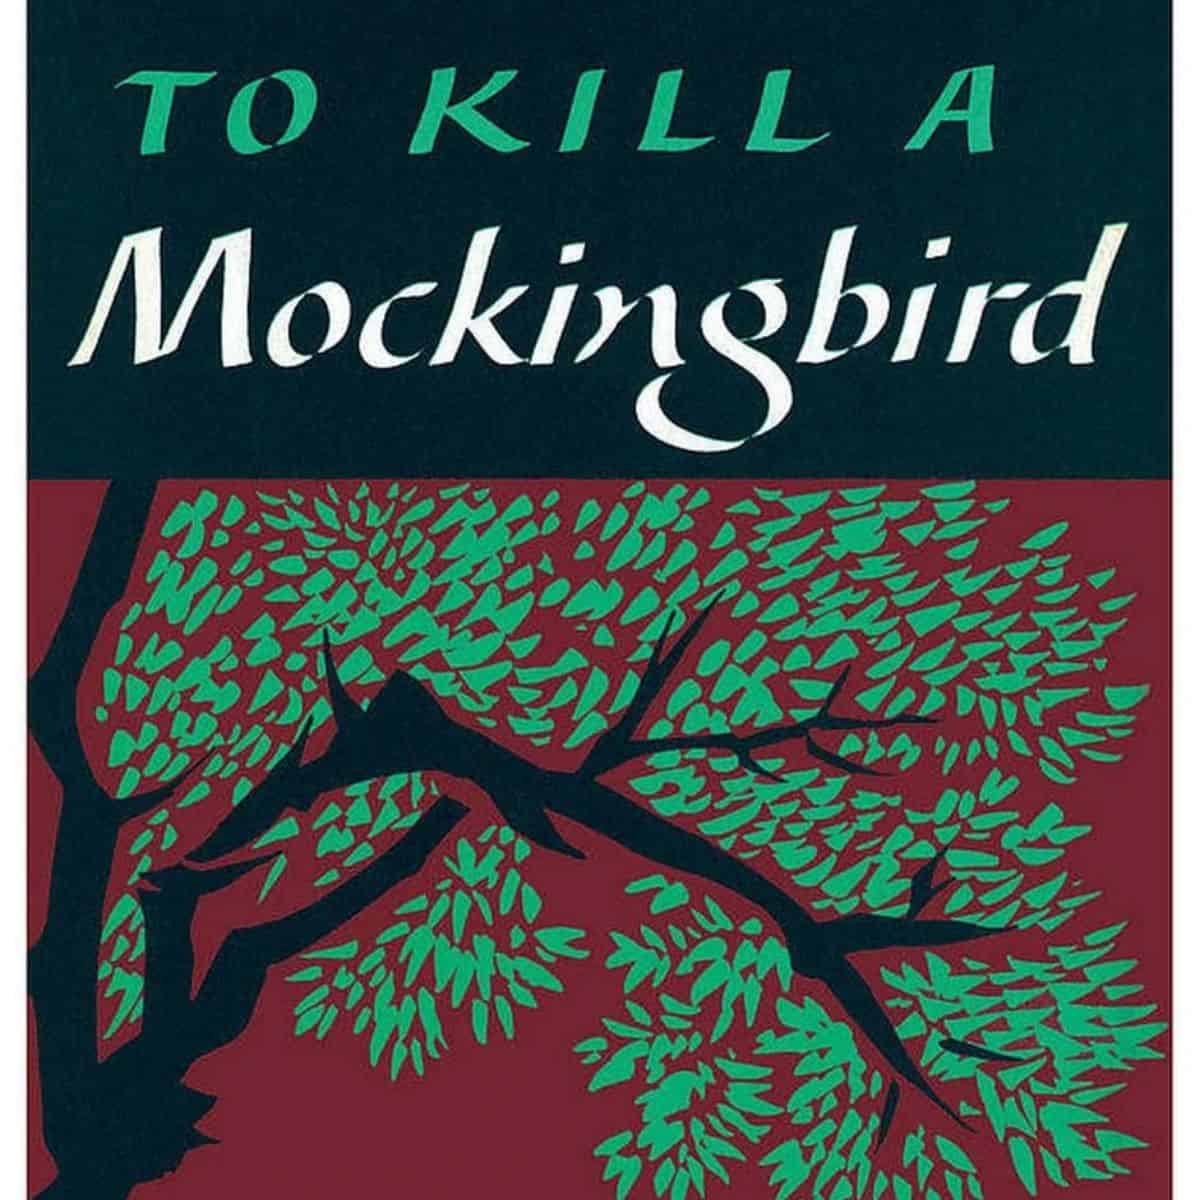 101 Important To Kill A Mockingbird Quotes